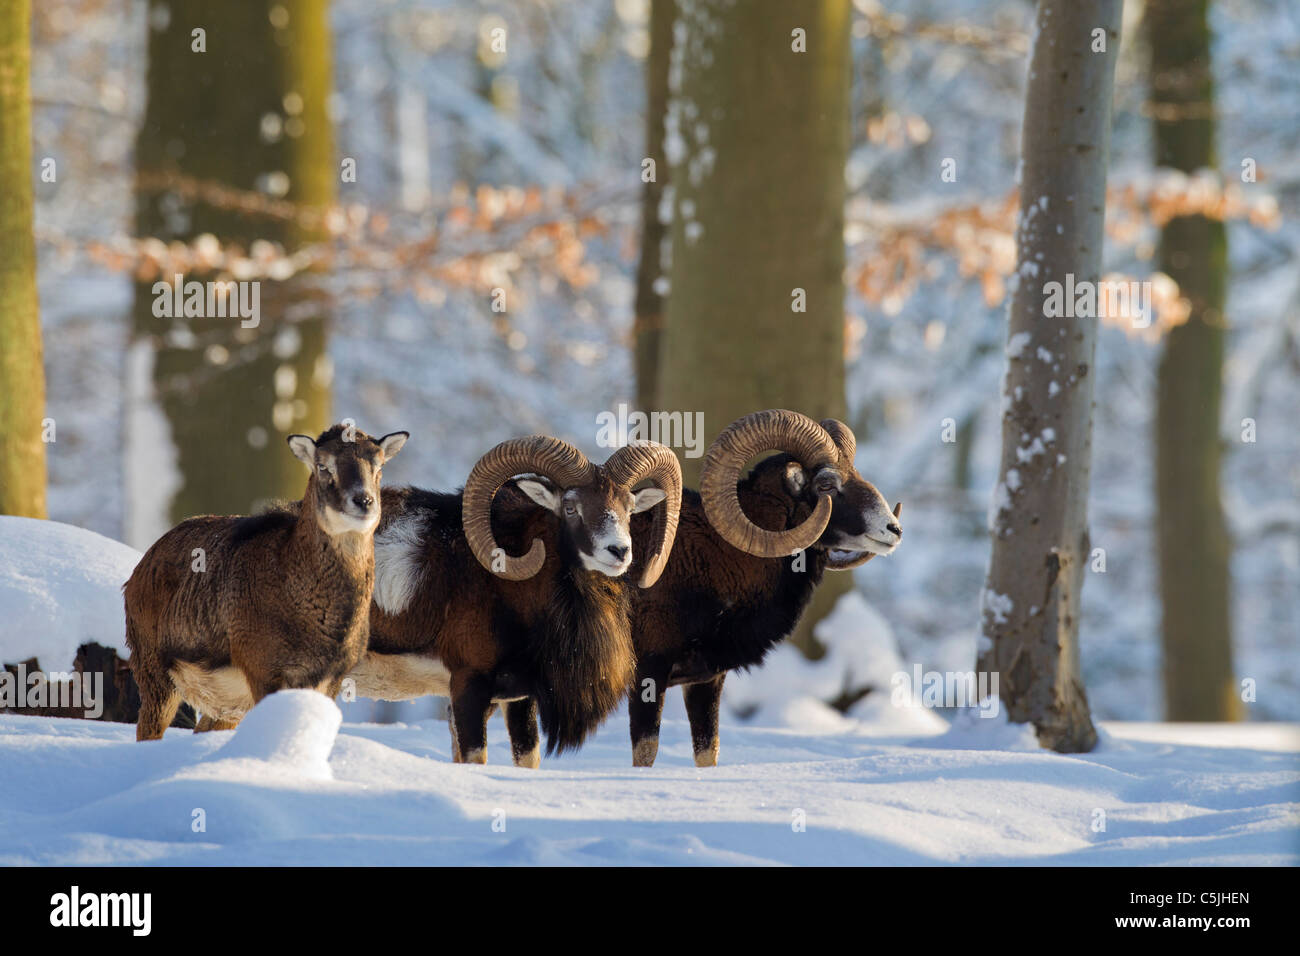 Mouflon (Ovis aries européenne orientalis / Ovis ammon musimon / Ovis gmelini musimon) des béliers et des brebis dans la forêt dans la neige en hiver Banque D'Images